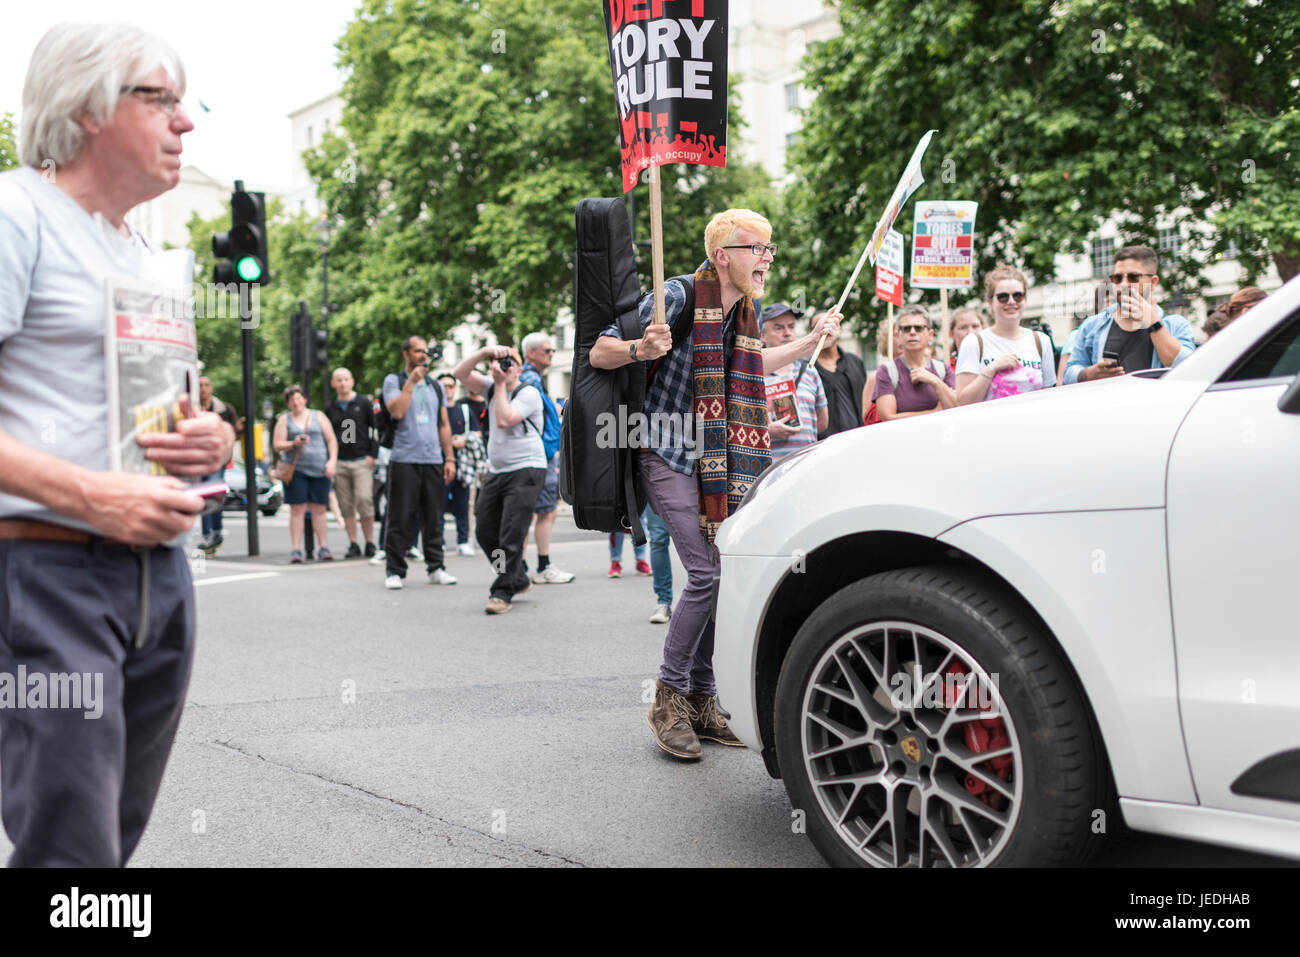 Londres, Royaume-Uni, 24 juin 2017. Les jeunes manifester devant Downing Street contre le gouvernement conservateur qui tente de créer une alliance avec la DUP. Un protestataire se tient debout devant une voiture. Banque D'Images